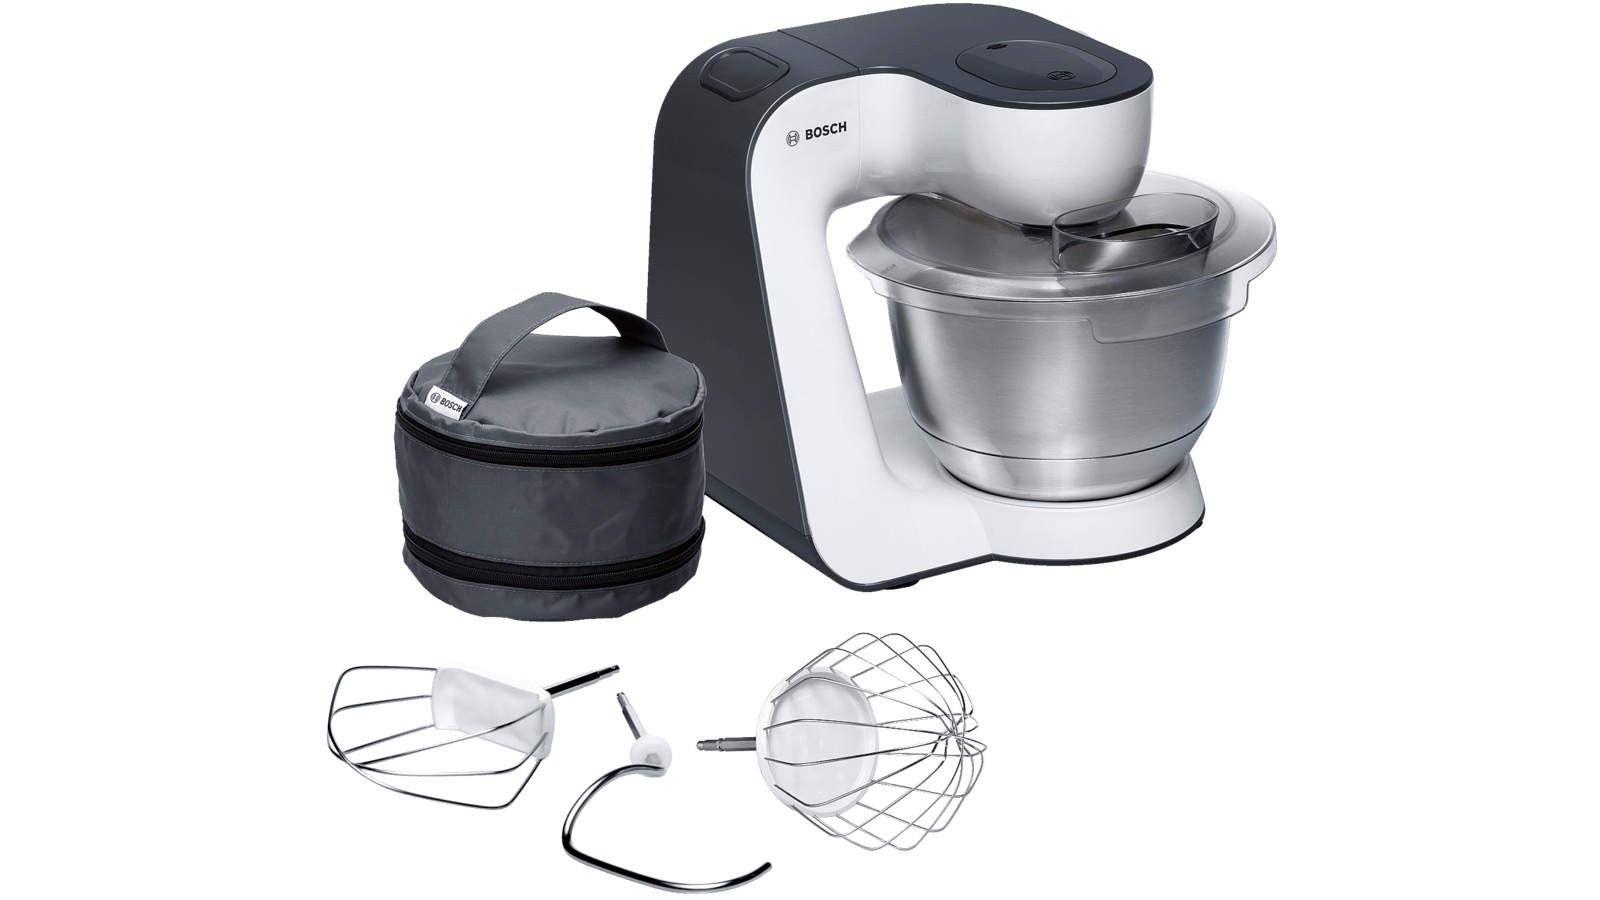 MUM54A00 Køkkenmaskine | DK